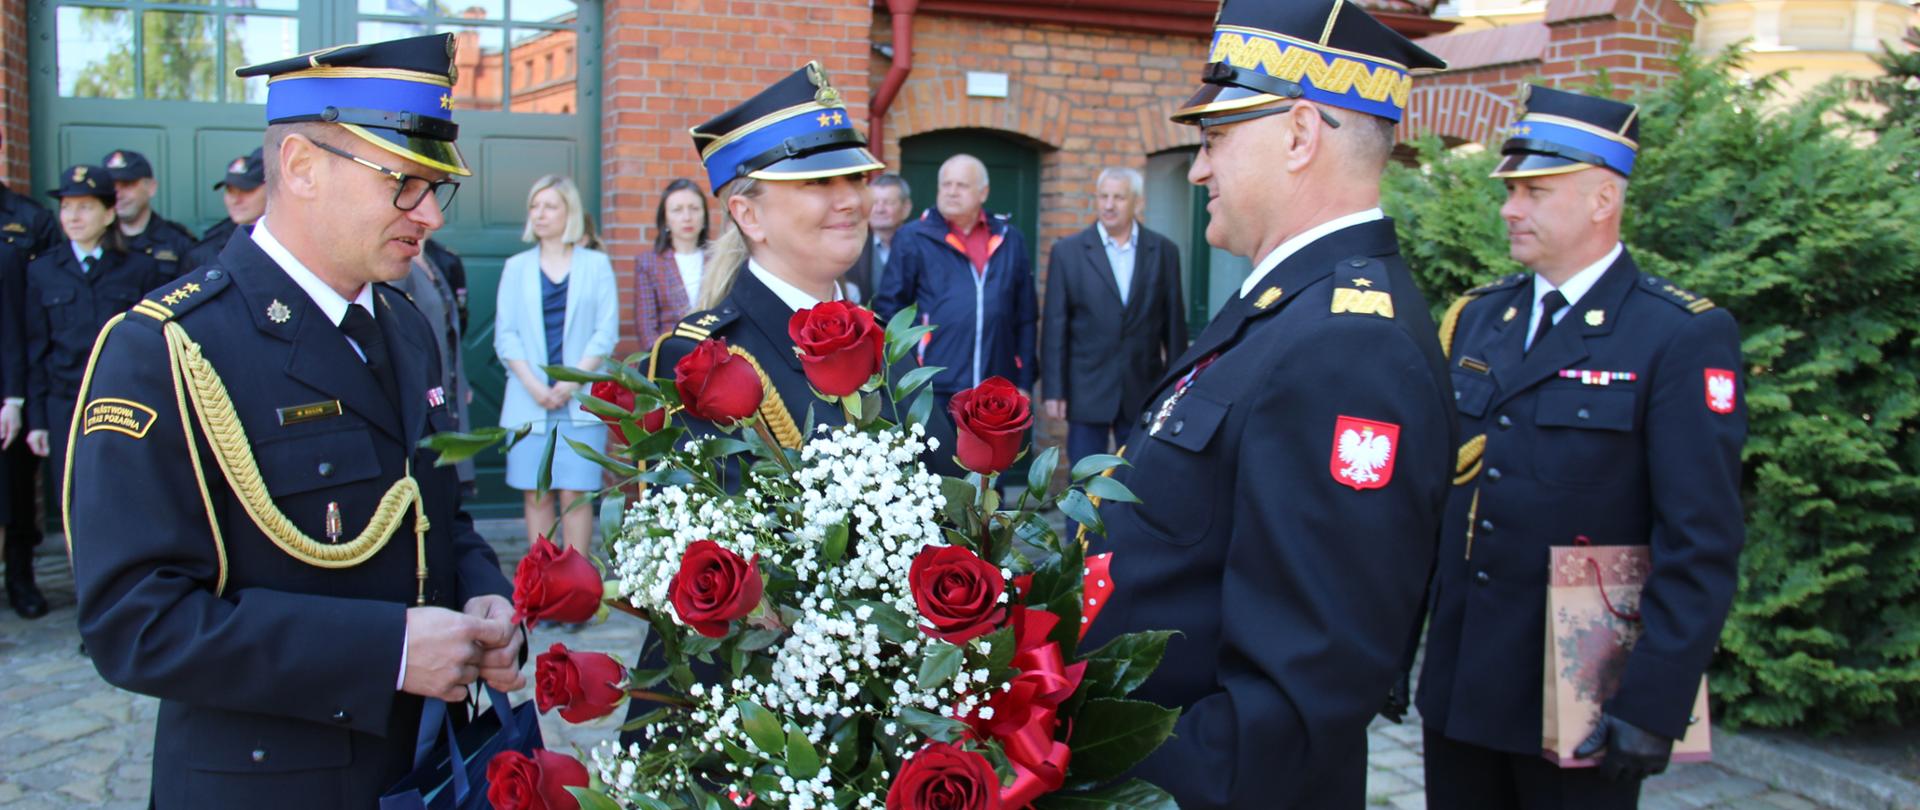 Komendant generał przyjmuje kwiaty od pracowników. Bukiet czerwonych róż. W tle fragment budynku komendy, współpracownicy.